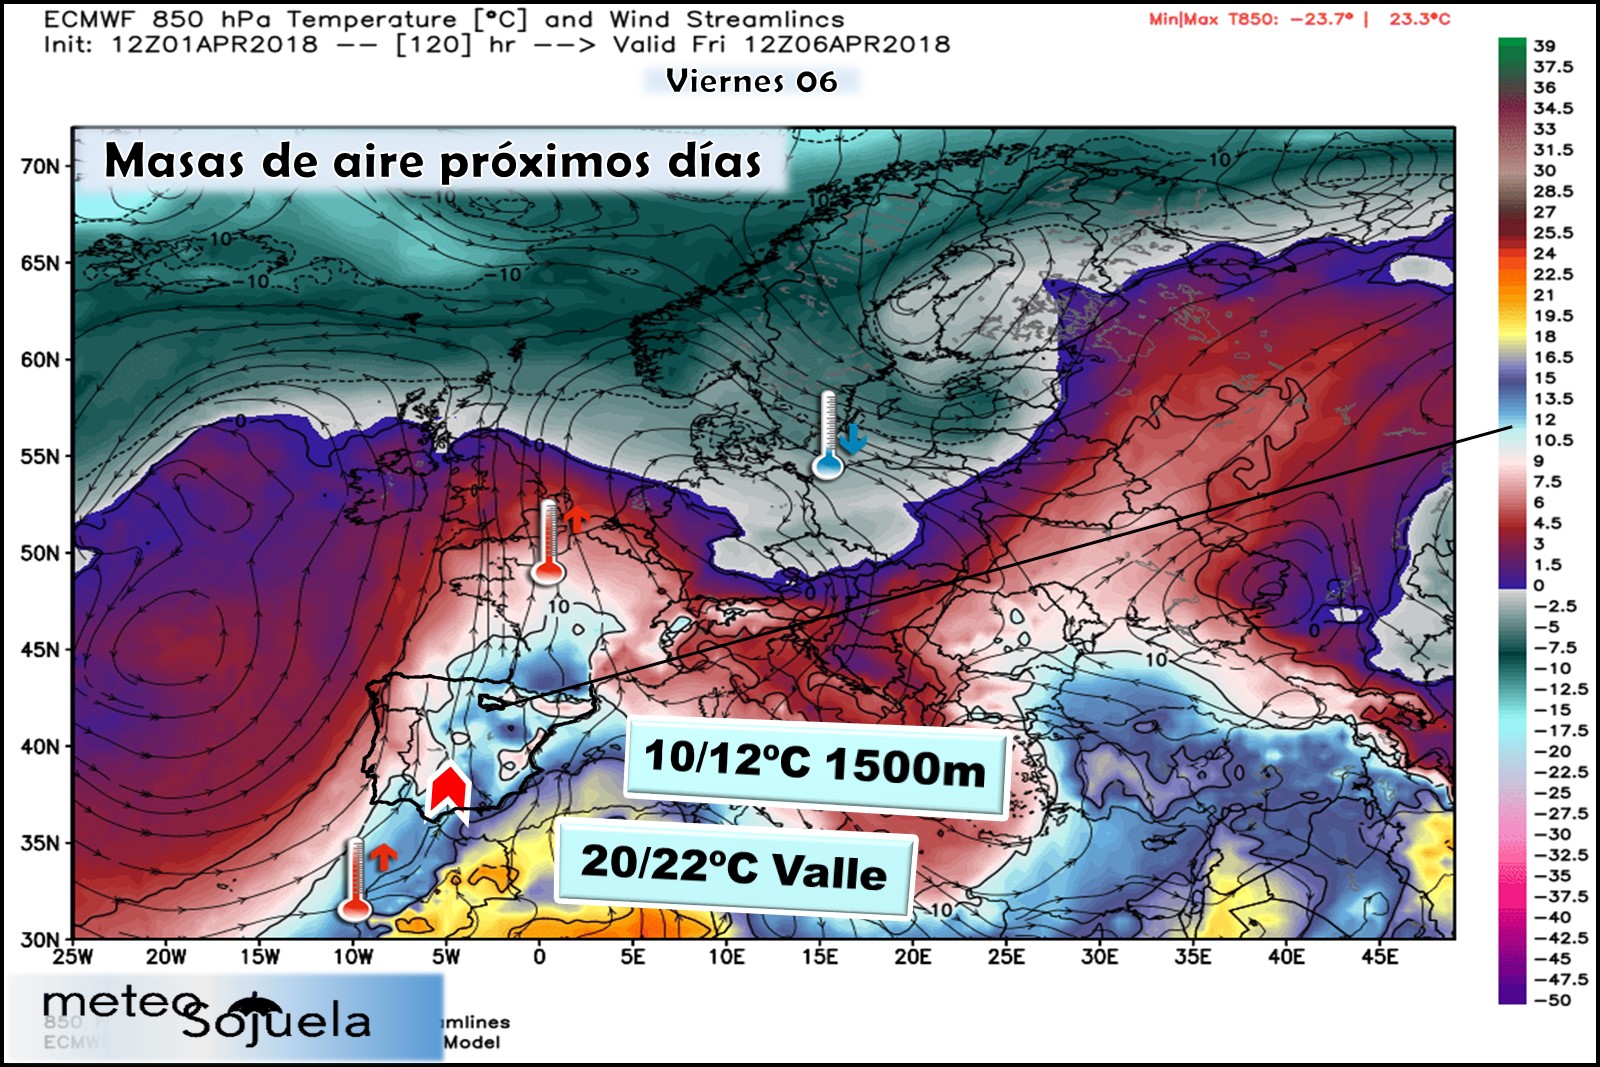 Modelos meteorológicos de masas de aire. Altura Geopotencial 850hPa. Meteosojuela